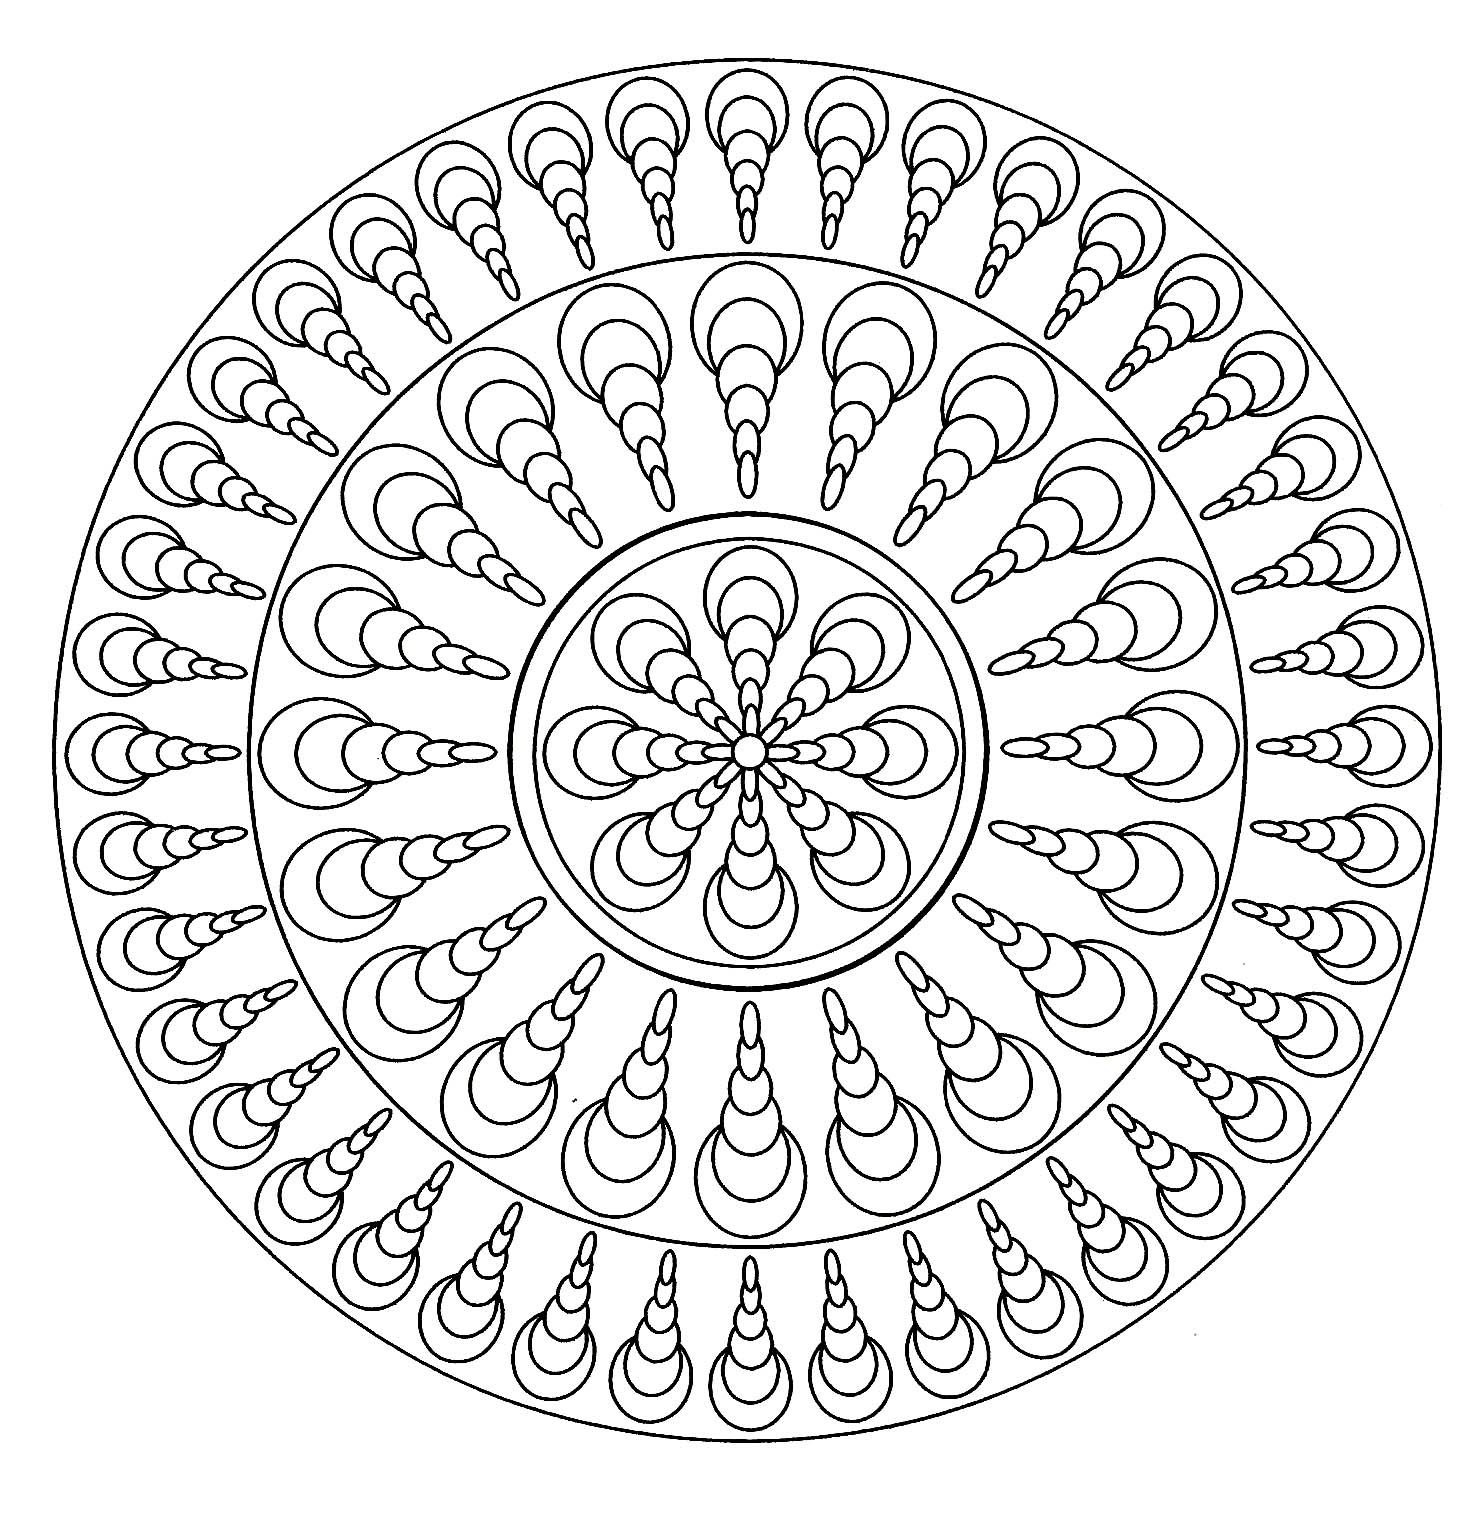 Wenn Sie ein Mandala mit Muscheln suchen, das nicht zu kompliziert zum Ausmalen ist, aber trotzdem einen relativen Schwierigkeitsgrad hat, ist dieses hier perfekt für Sie.